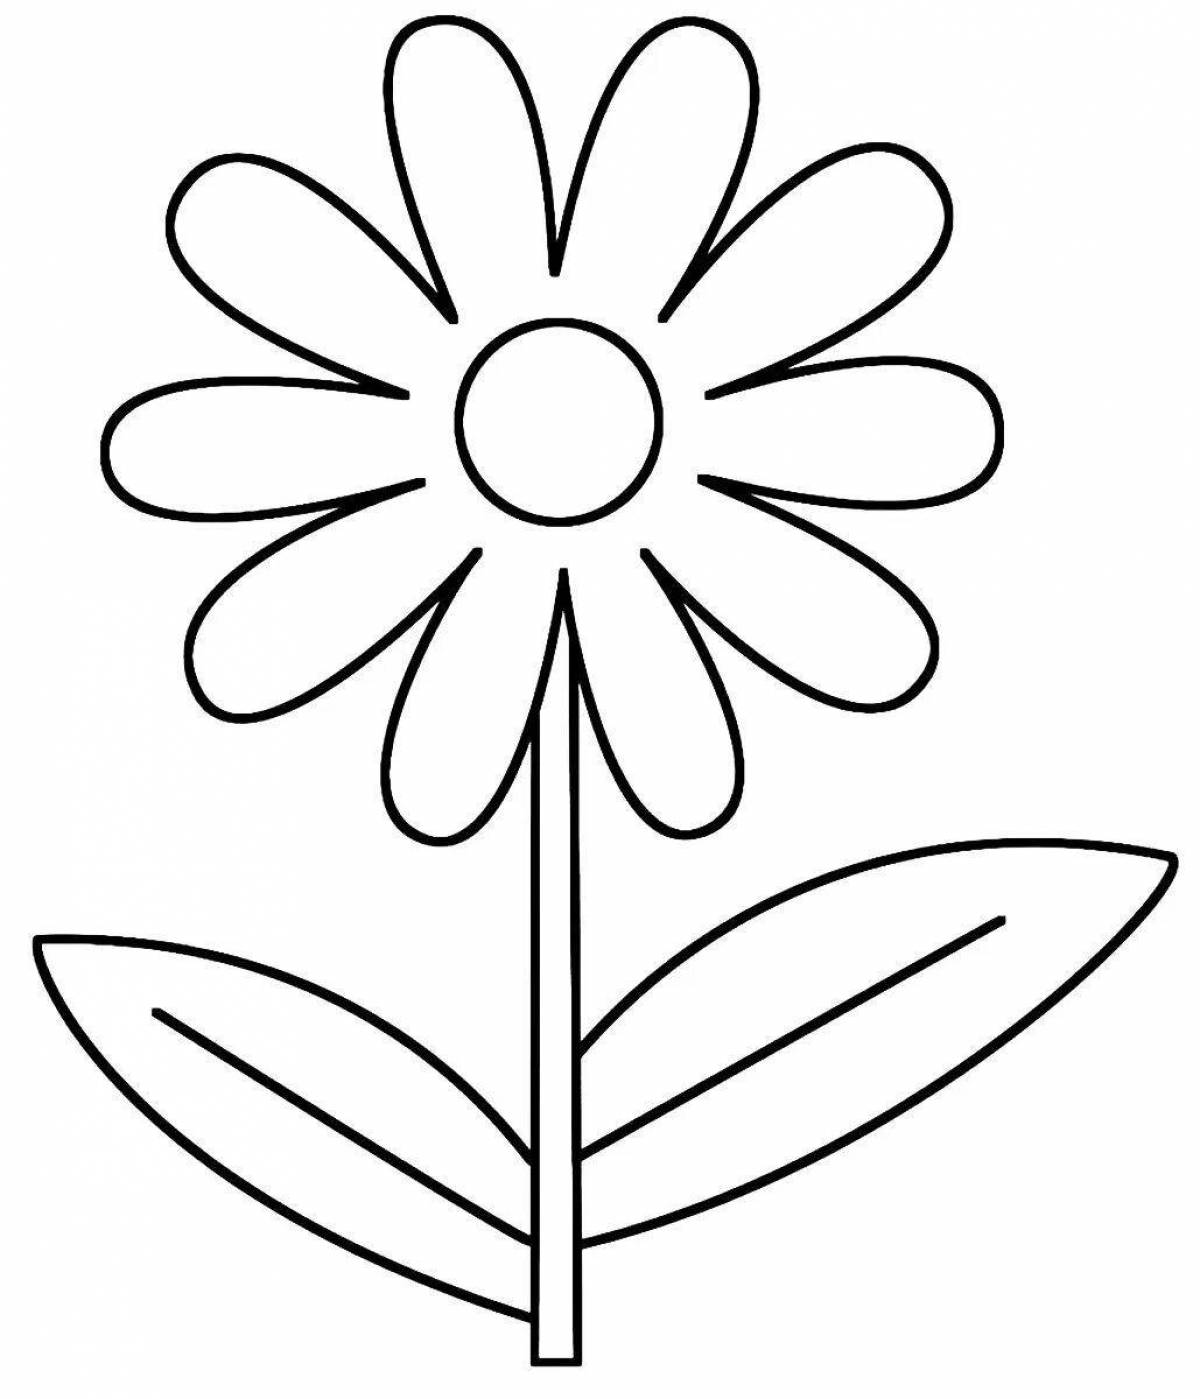 Royal daisy coloring page